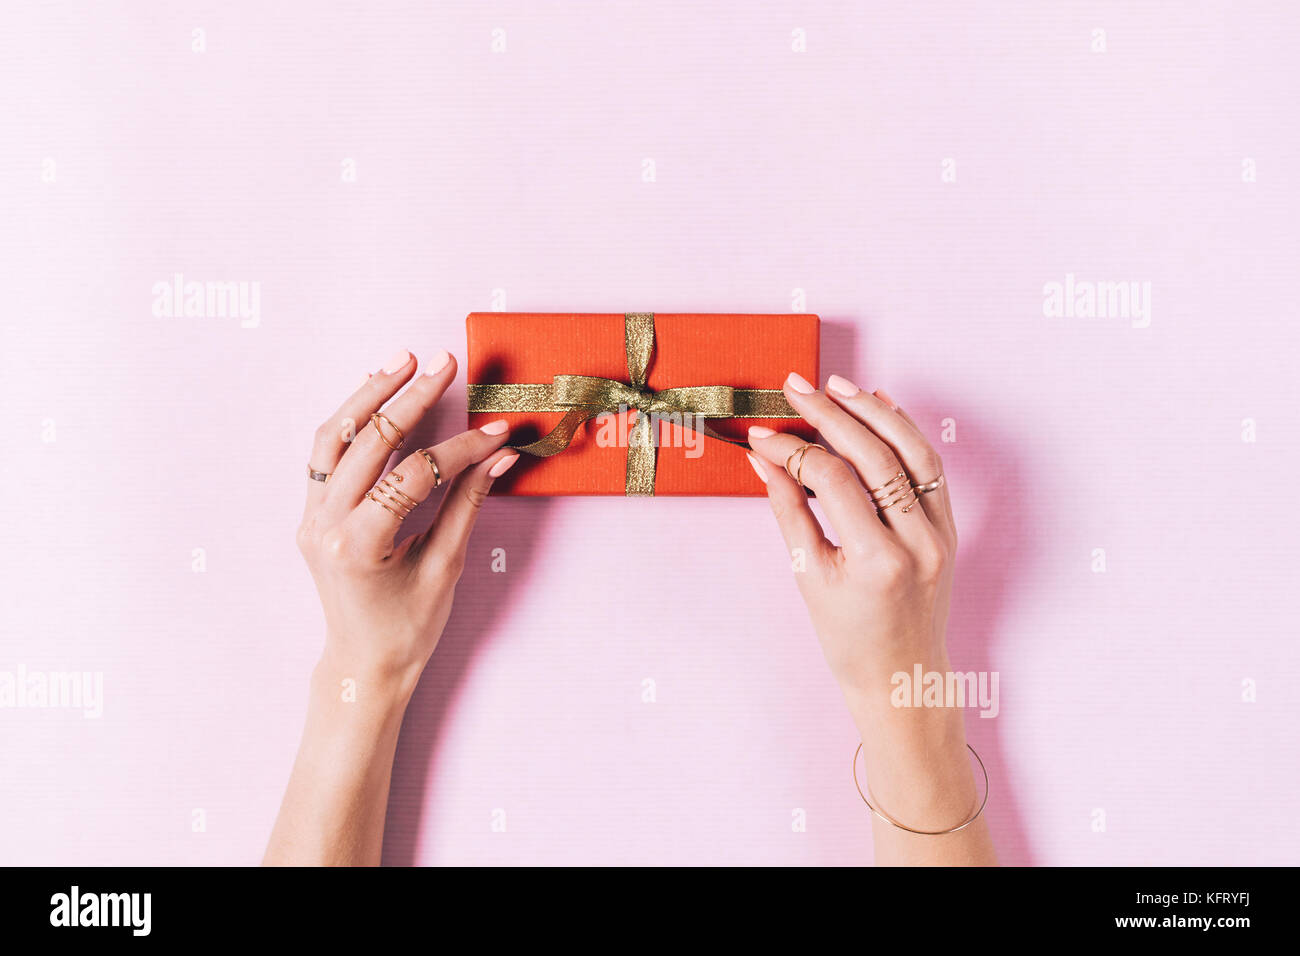 Vue de dessus de femmes faisant un noeud sur une case avec un cadeau sur fond rose Banque D'Images